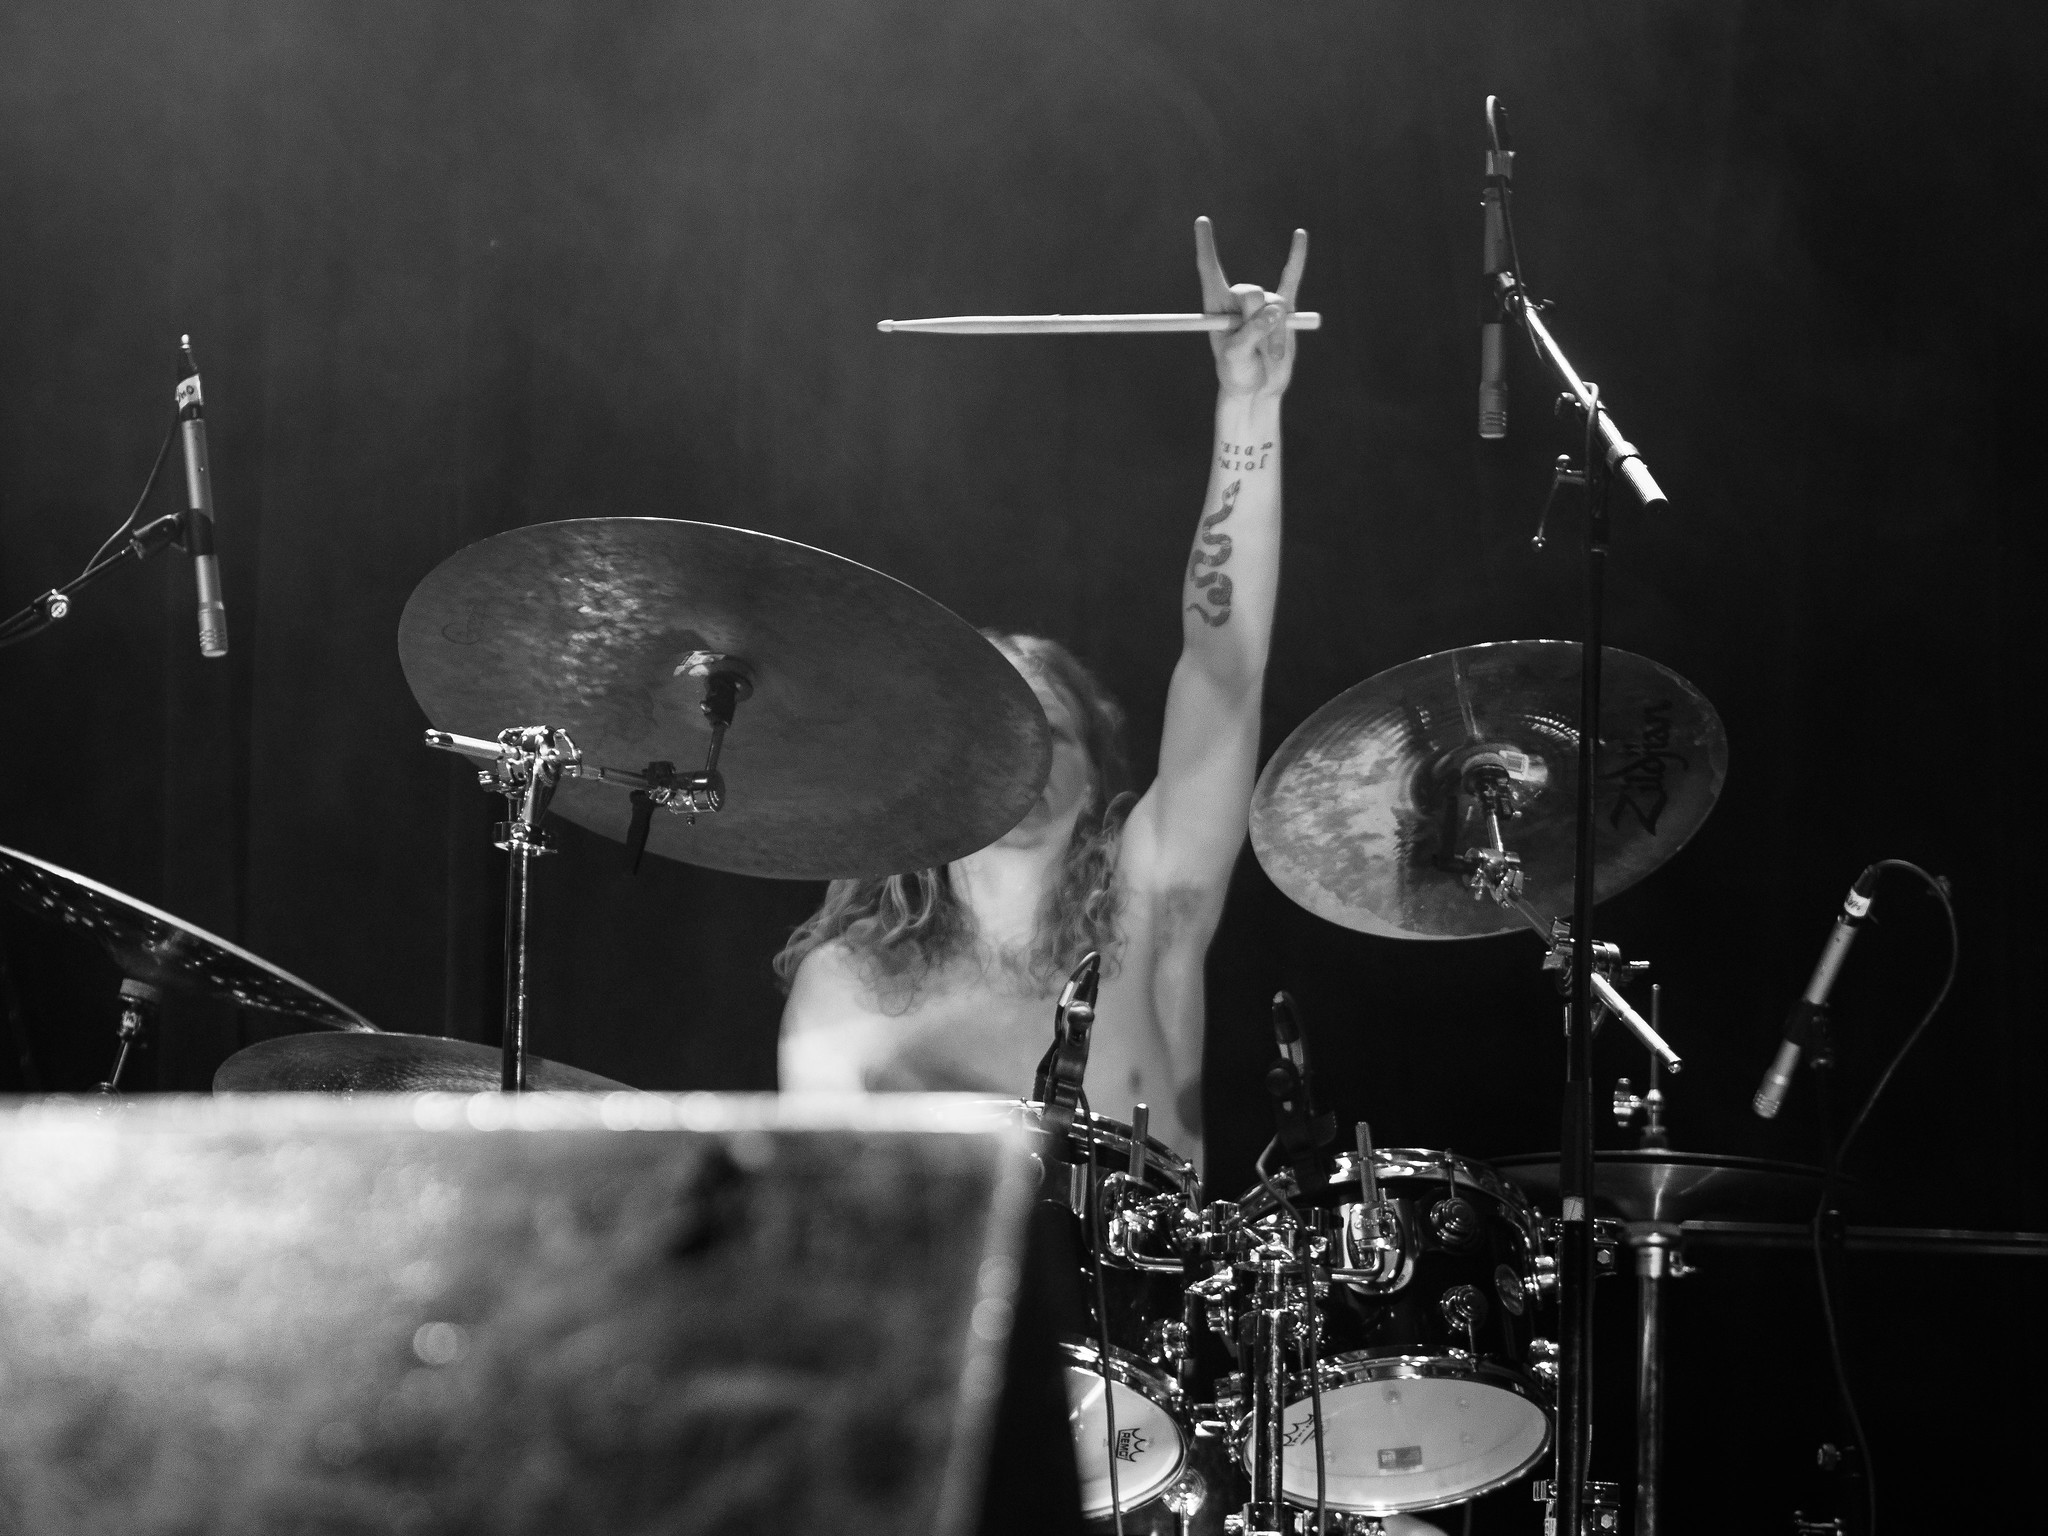 Astral Tomb drummer Zach Johnson